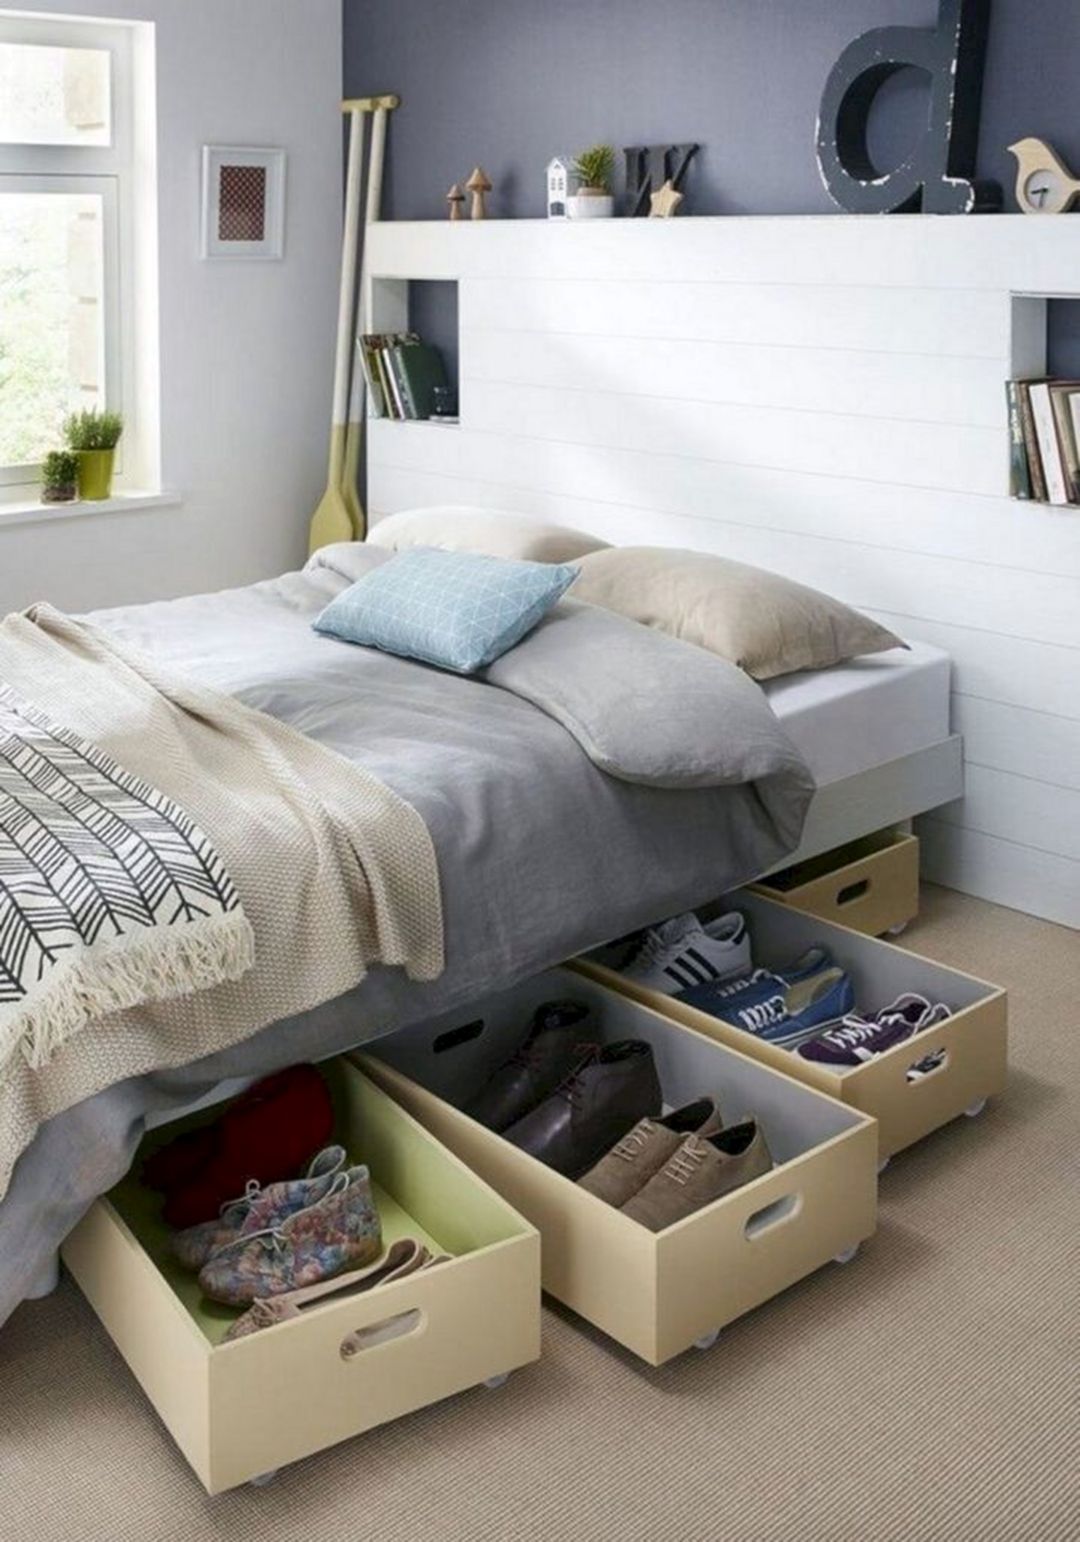 Bedroom Hidden Storage Ideas